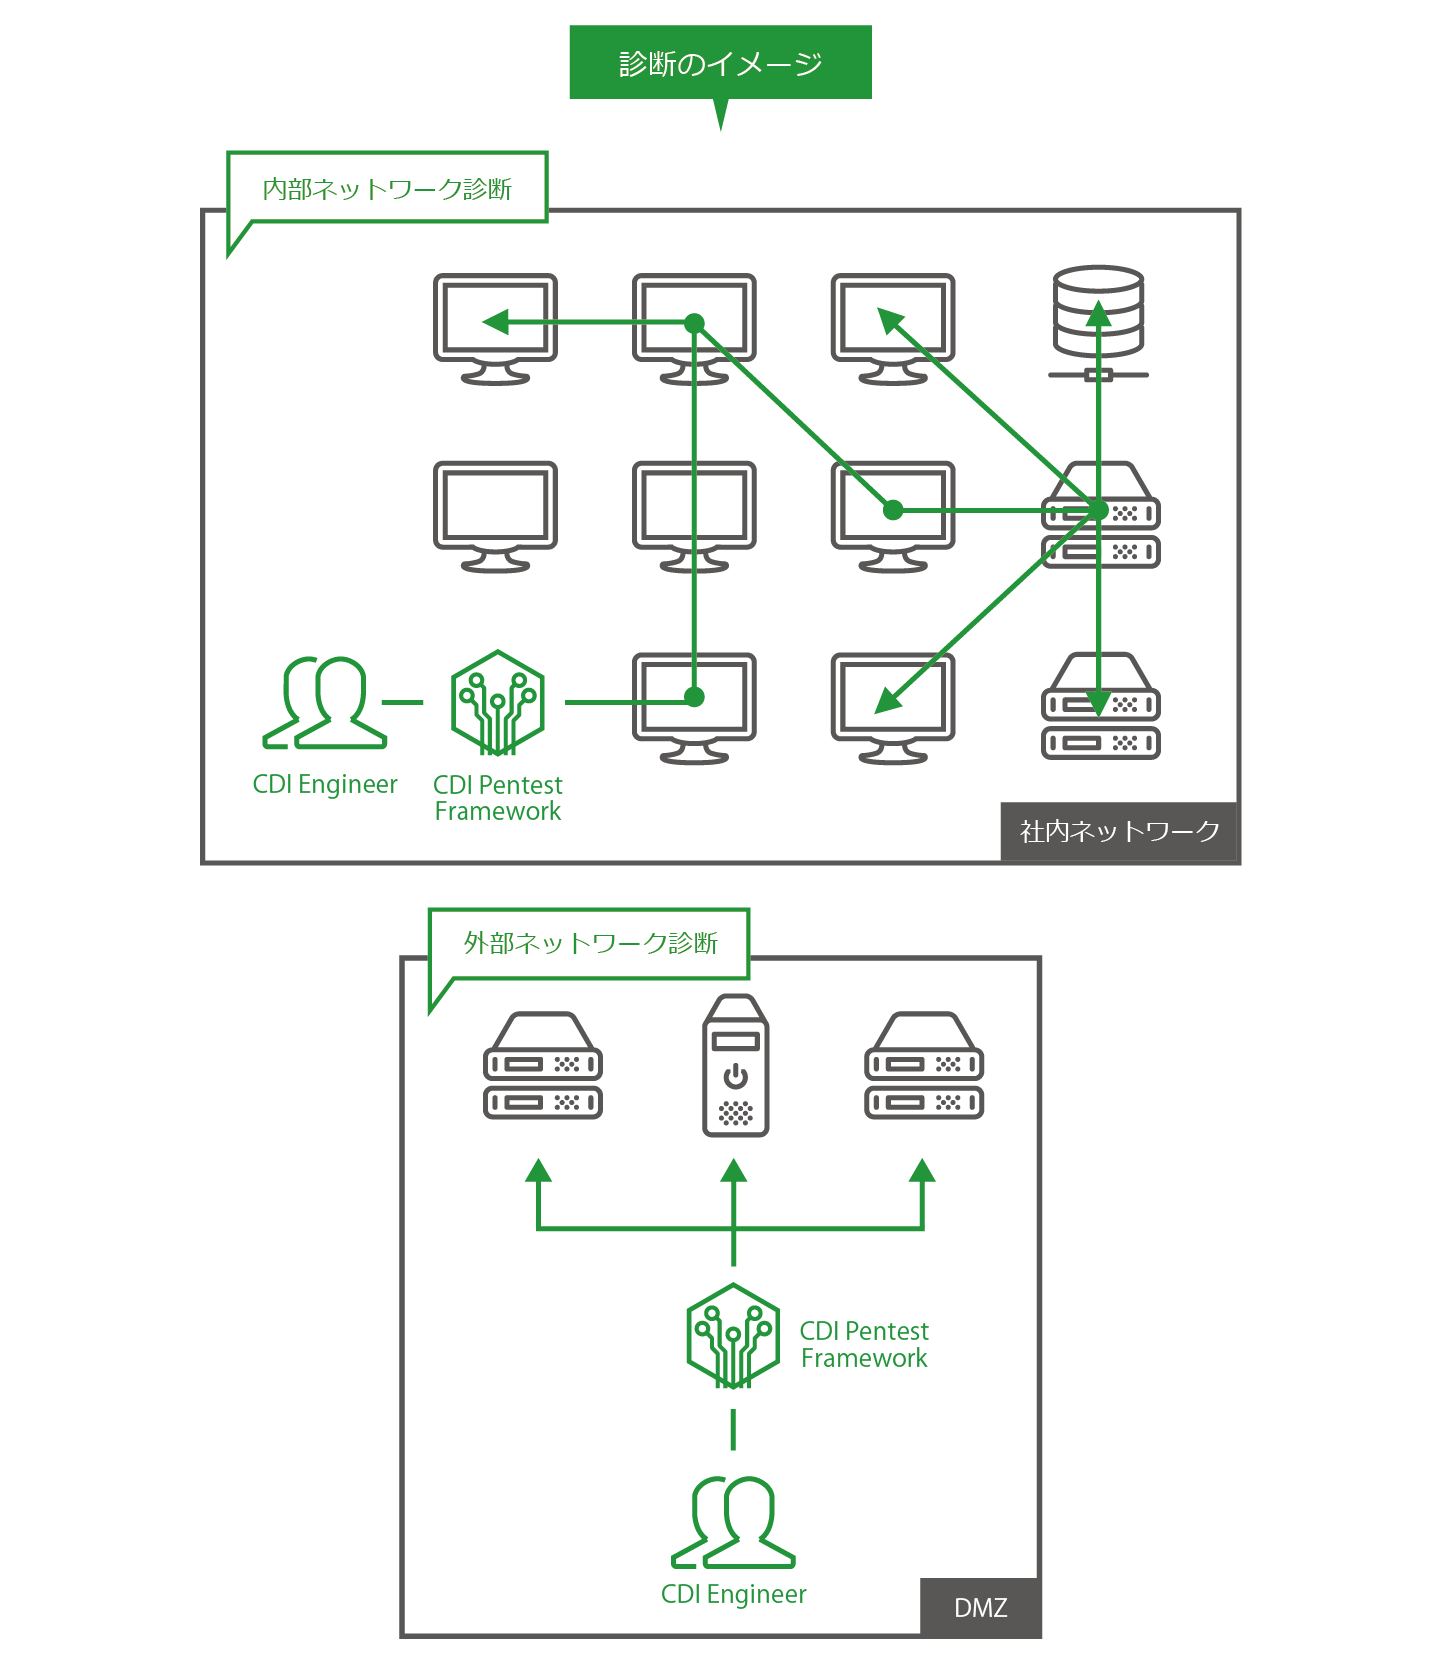 ネットワークに関するペネトレーションテストのイメージ。社内ネットワークといった内部ネットワークとDMZといった外部ネットワーク。